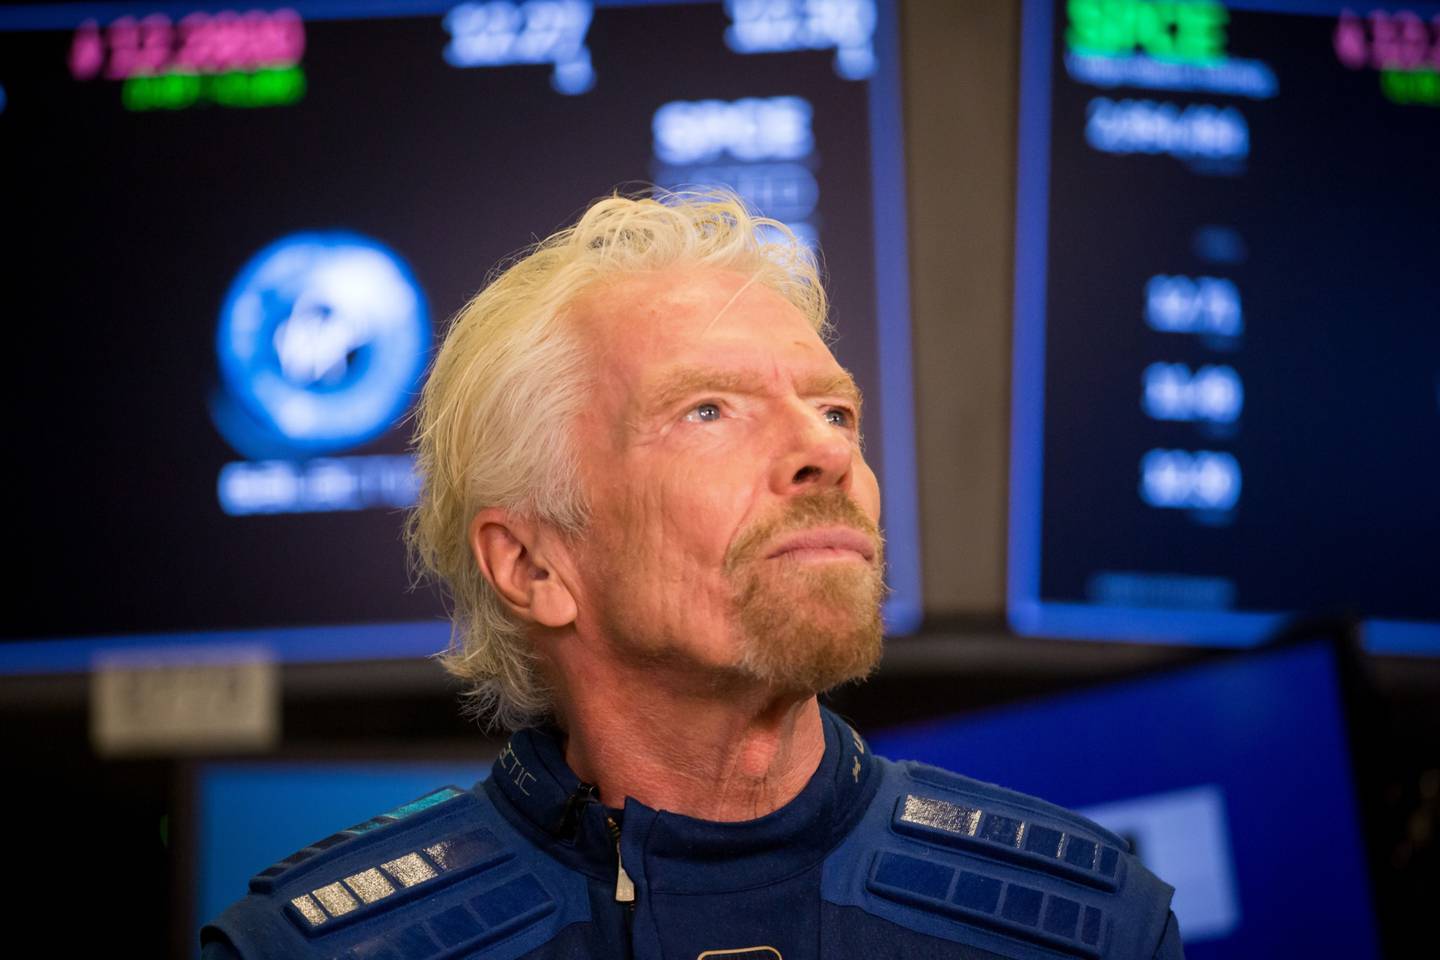 En la carrera de los multimillonarios que han lanzado sus empresas para ir al espacio, Virgin Galactic, de Richard Branson, está lista para emprender el vuelo al espacio con pasajeros en el segundo trimestre del año.